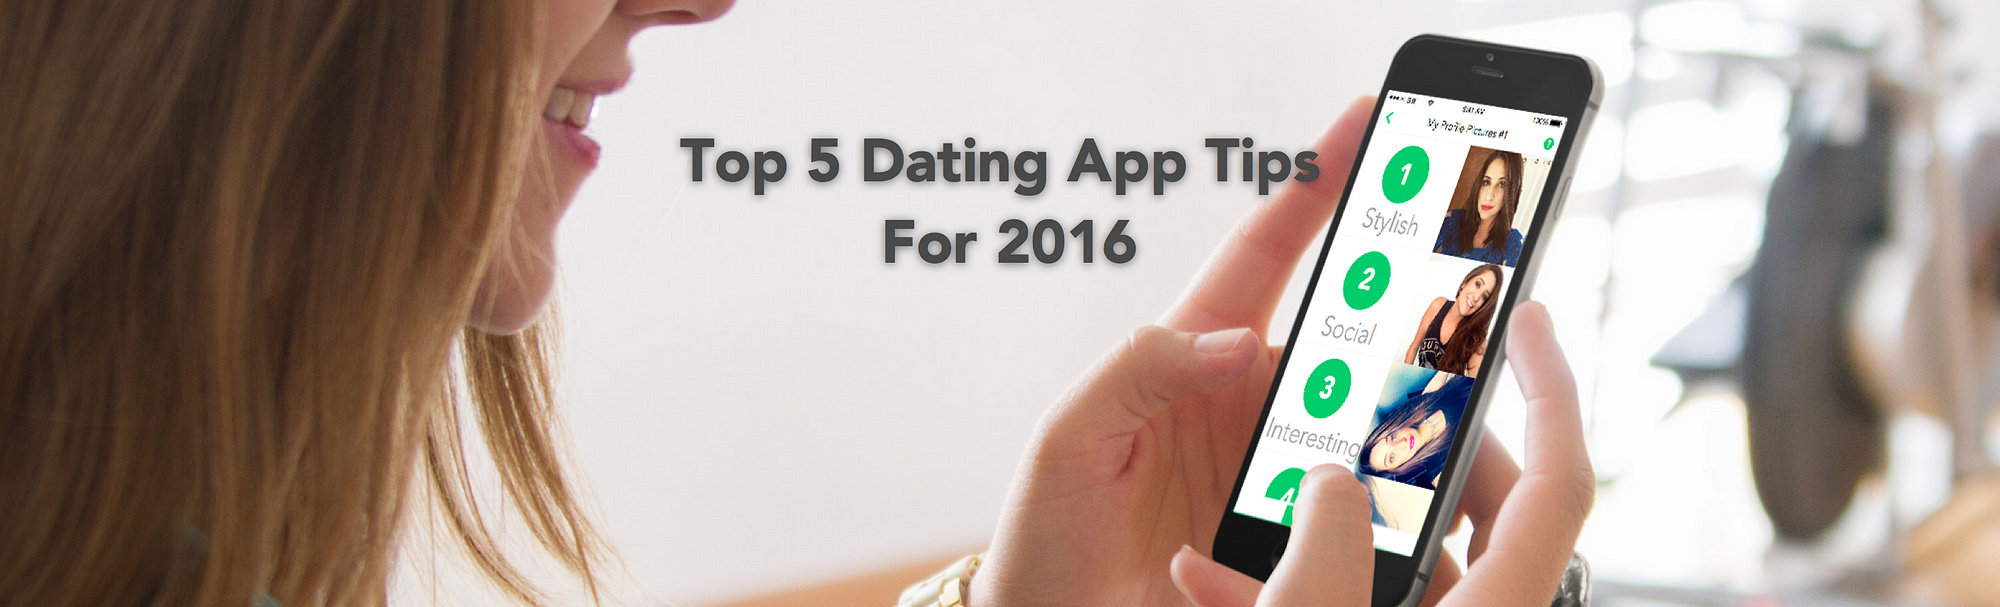 Dating app top 5